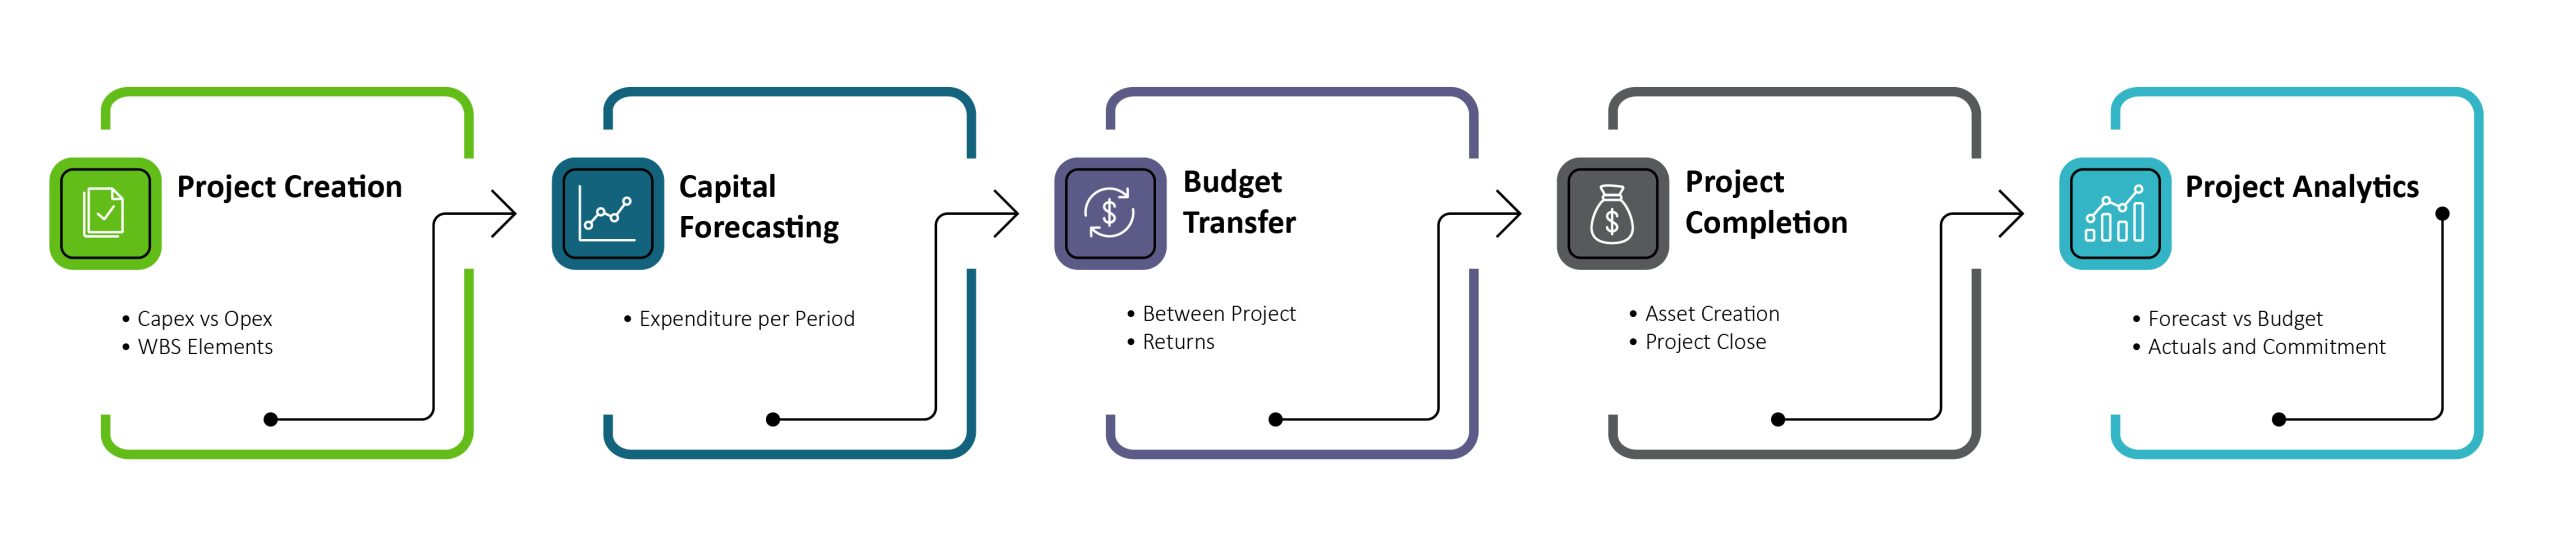 Capital Project Controls - Forecasting Process Diagram